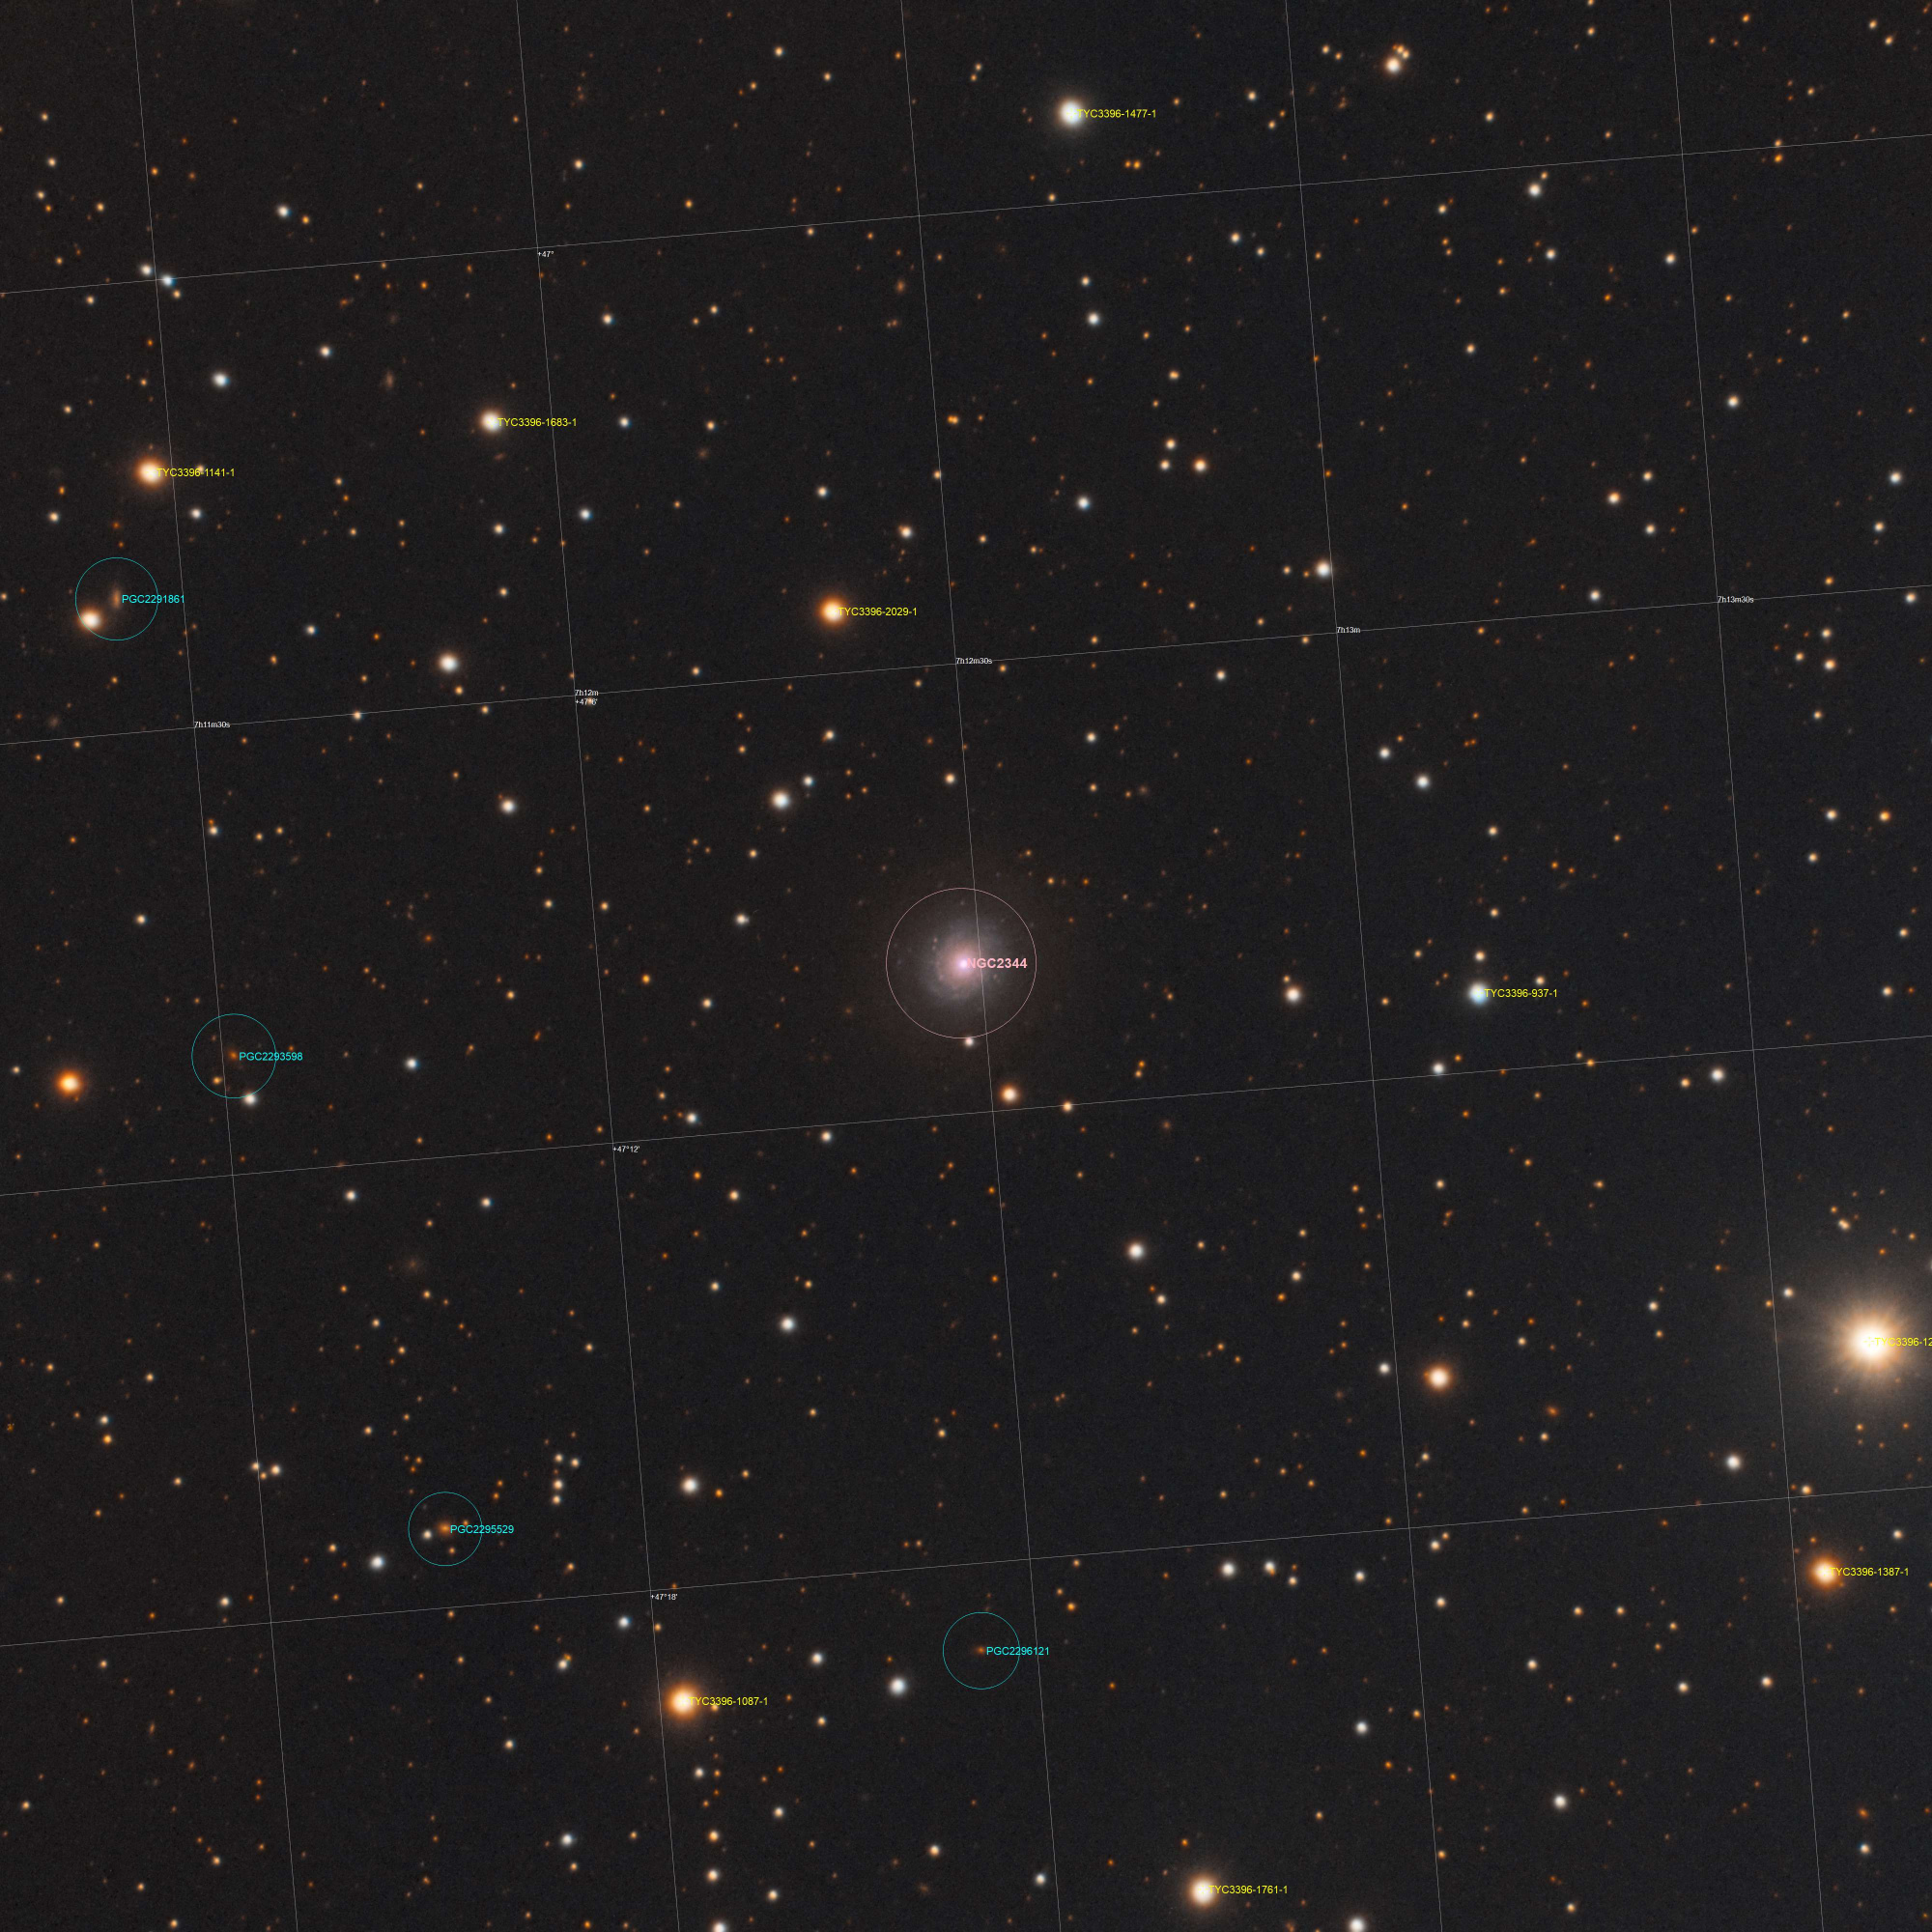 NGC_2344_Annotated.thumb.jpg.e3bba5fb657f28186c64e9a56dd26e24.jpg